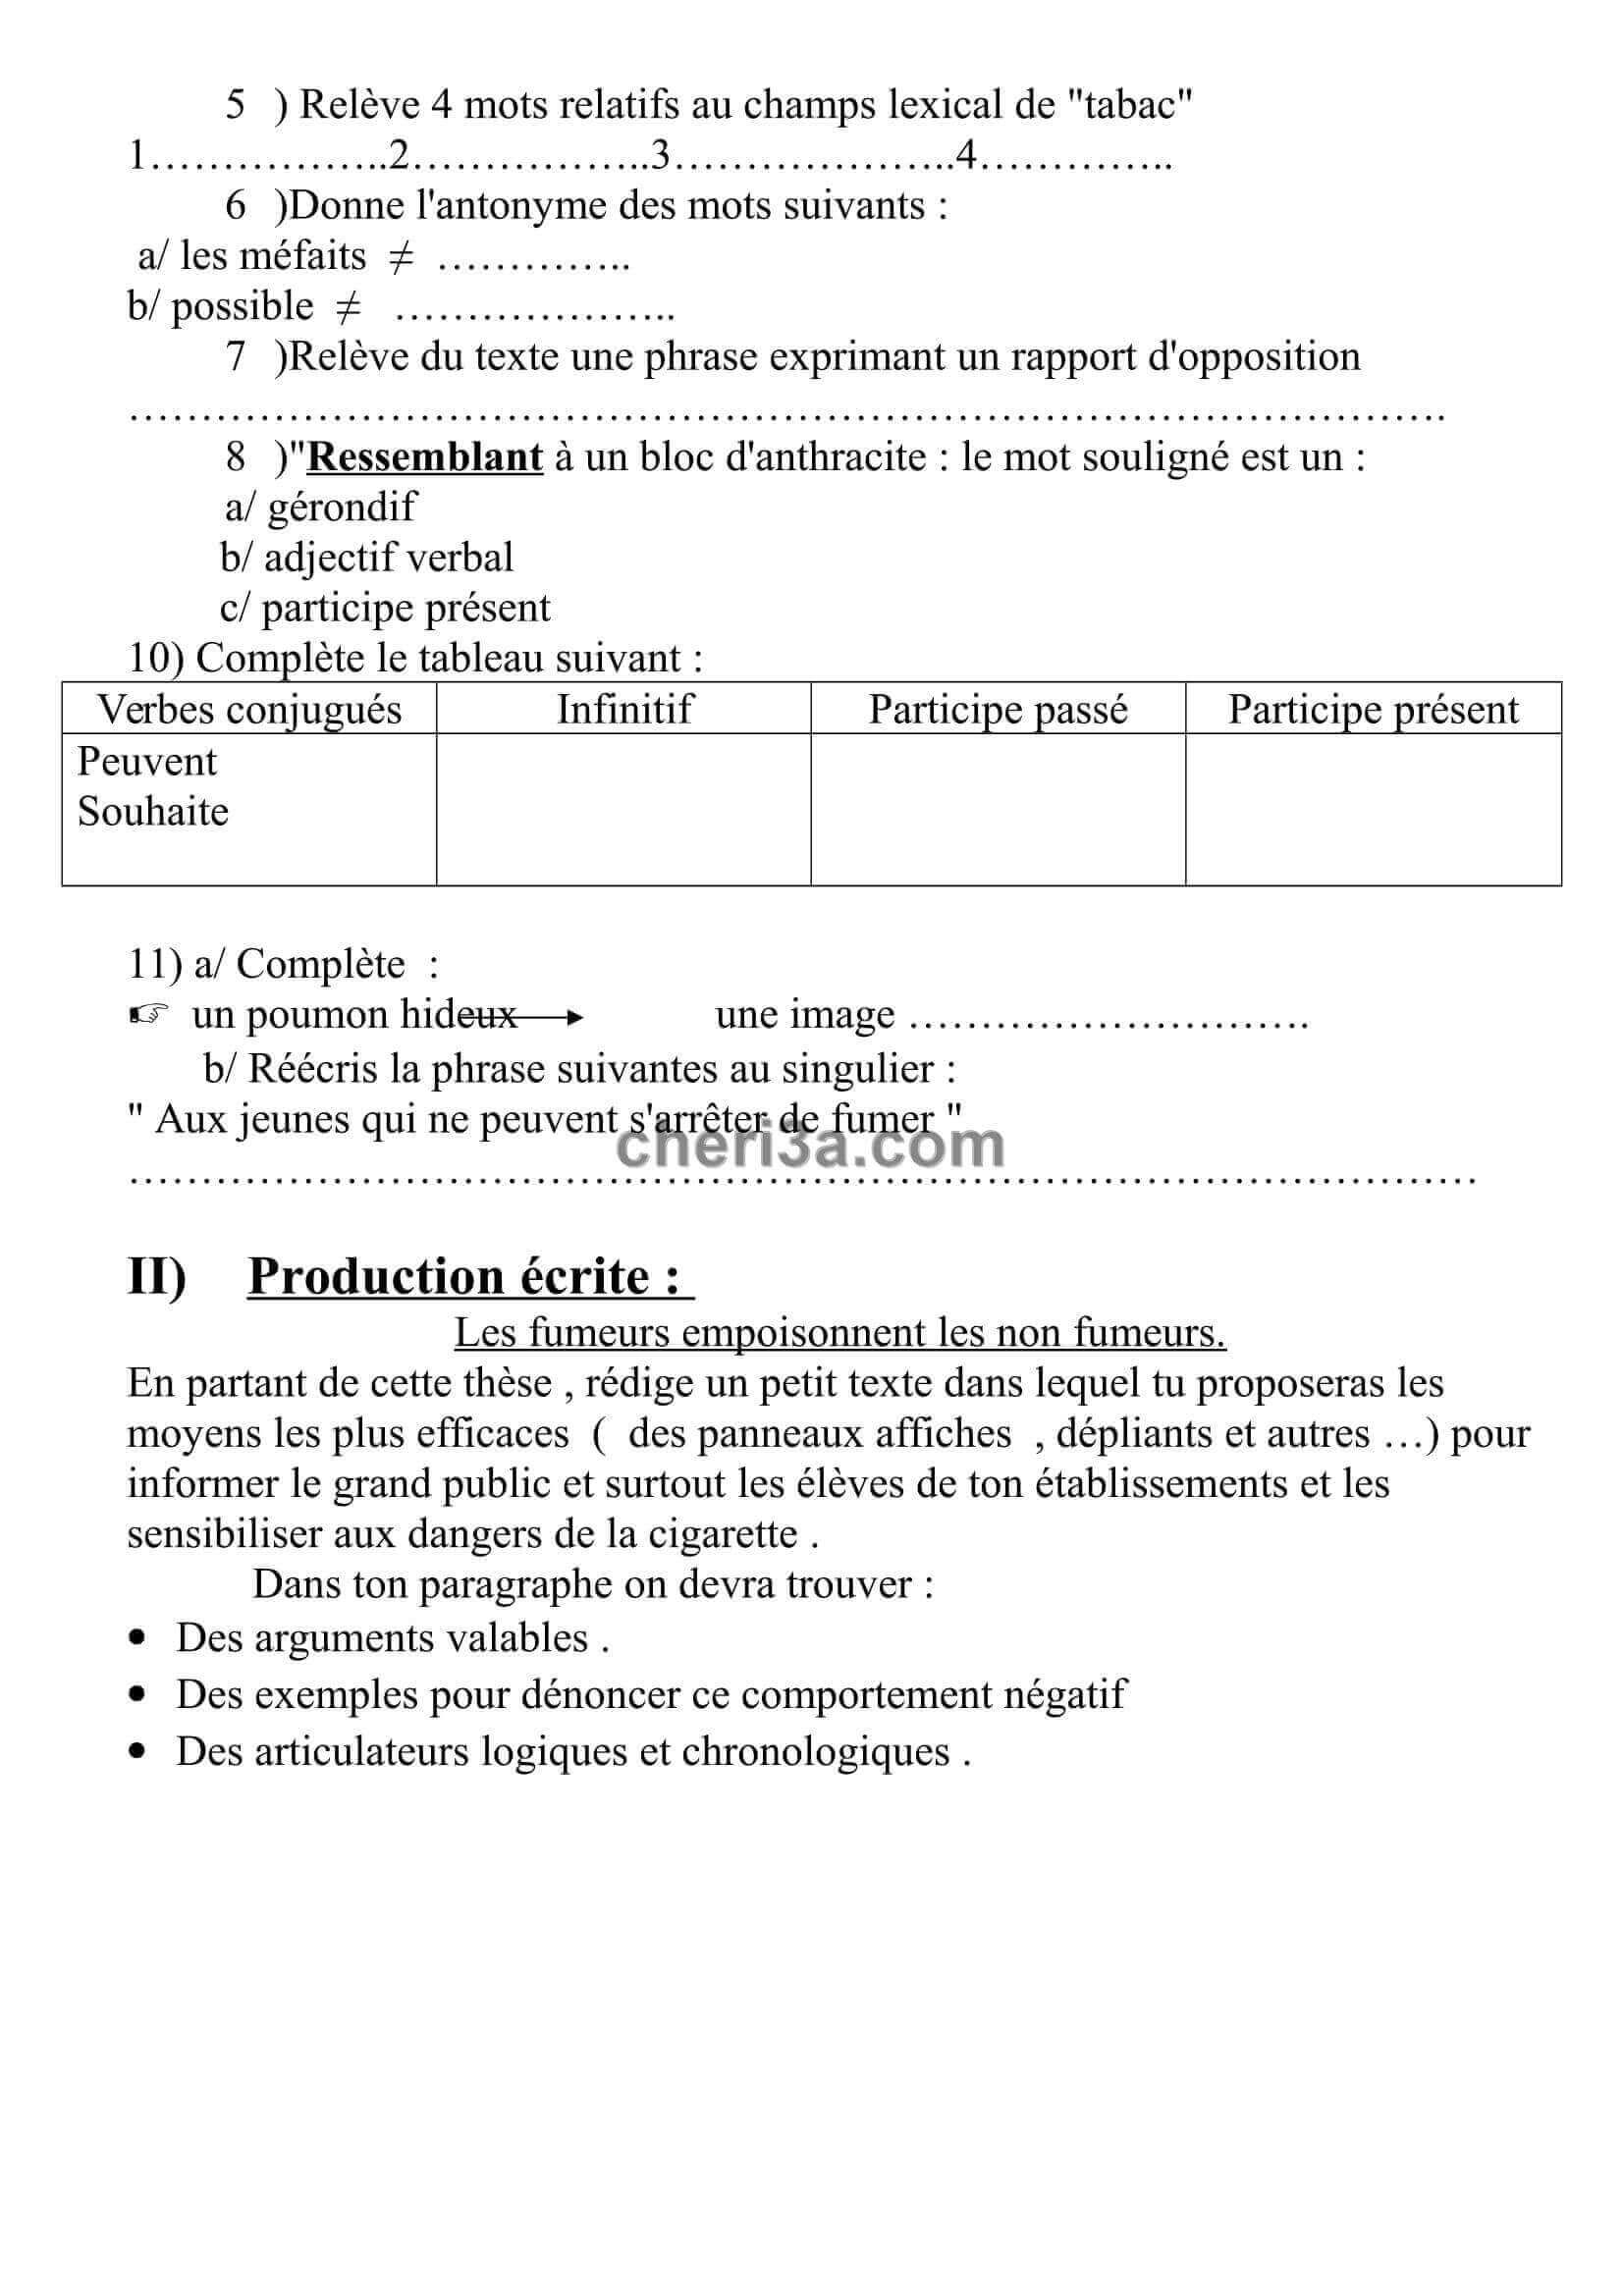 اختبار الفصل الاول للسنة الرابعة متوسط اللغة الفرنسية النموذج 2